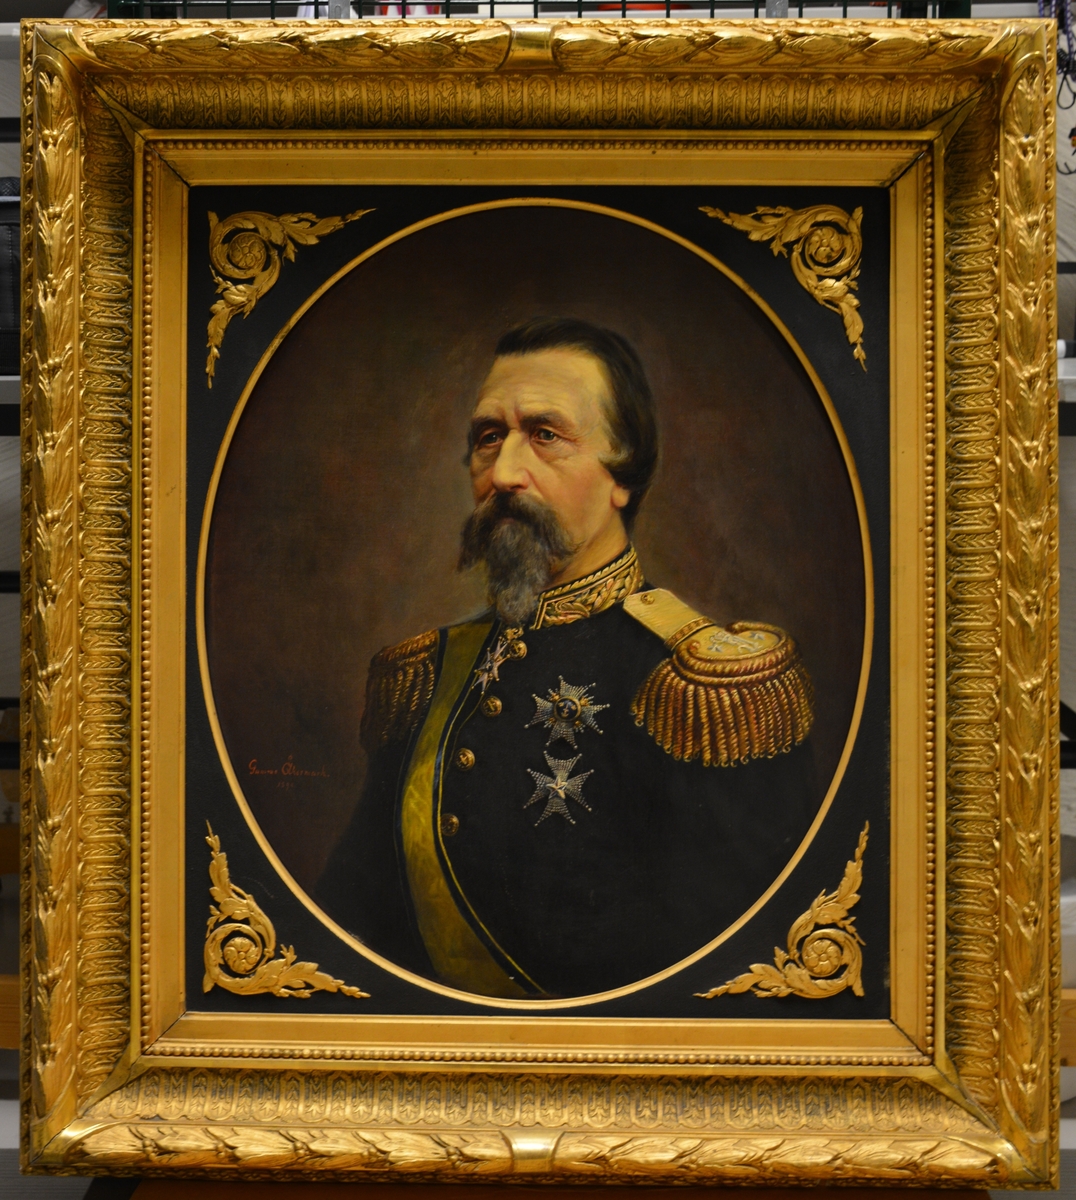 General Rosensvärd